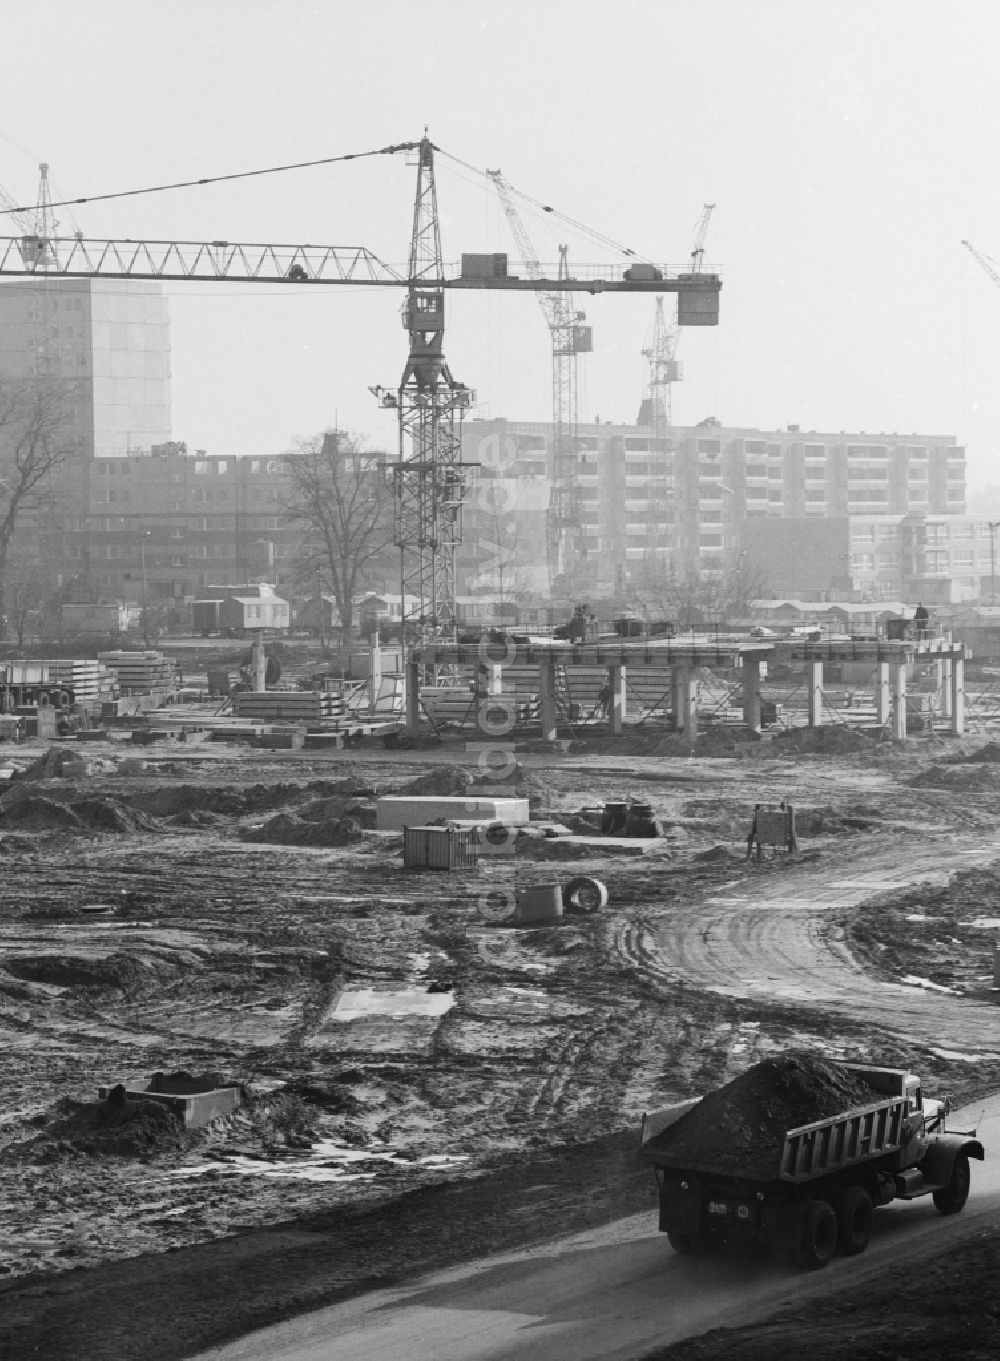 DDR-Fotoarchiv: Berlin - Baustelle im Neubaugebiet in Berlin Hohenschönhausen, der ehemaligen Hauptstadt der DDR, Deutsche Demokratische Republik